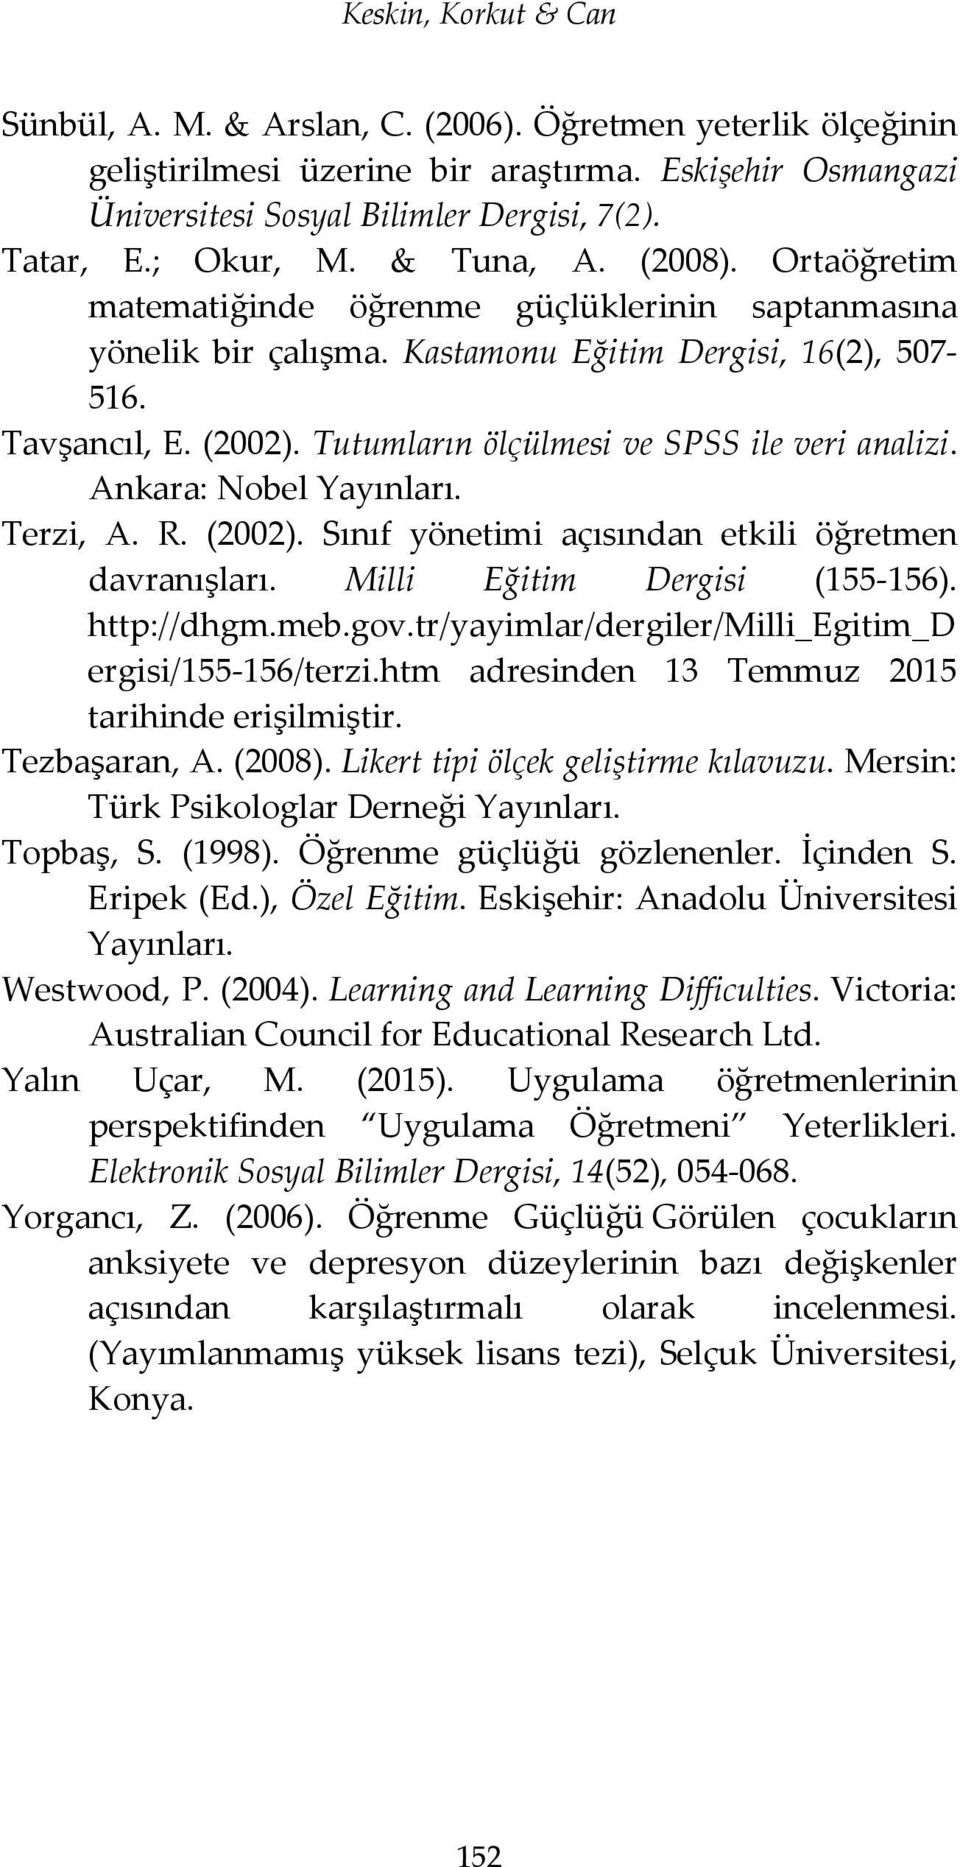 Tutumların ölçülmesi ve SPSS ile veri analizi. Ankara: Nobel Yayınları. Terzi, A. R. (2002). Sınıf yönetimi açısından etkili öğretmen davranışları. Milli Eğitim Dergisi (155-156). http://dhgm.meb.gov.